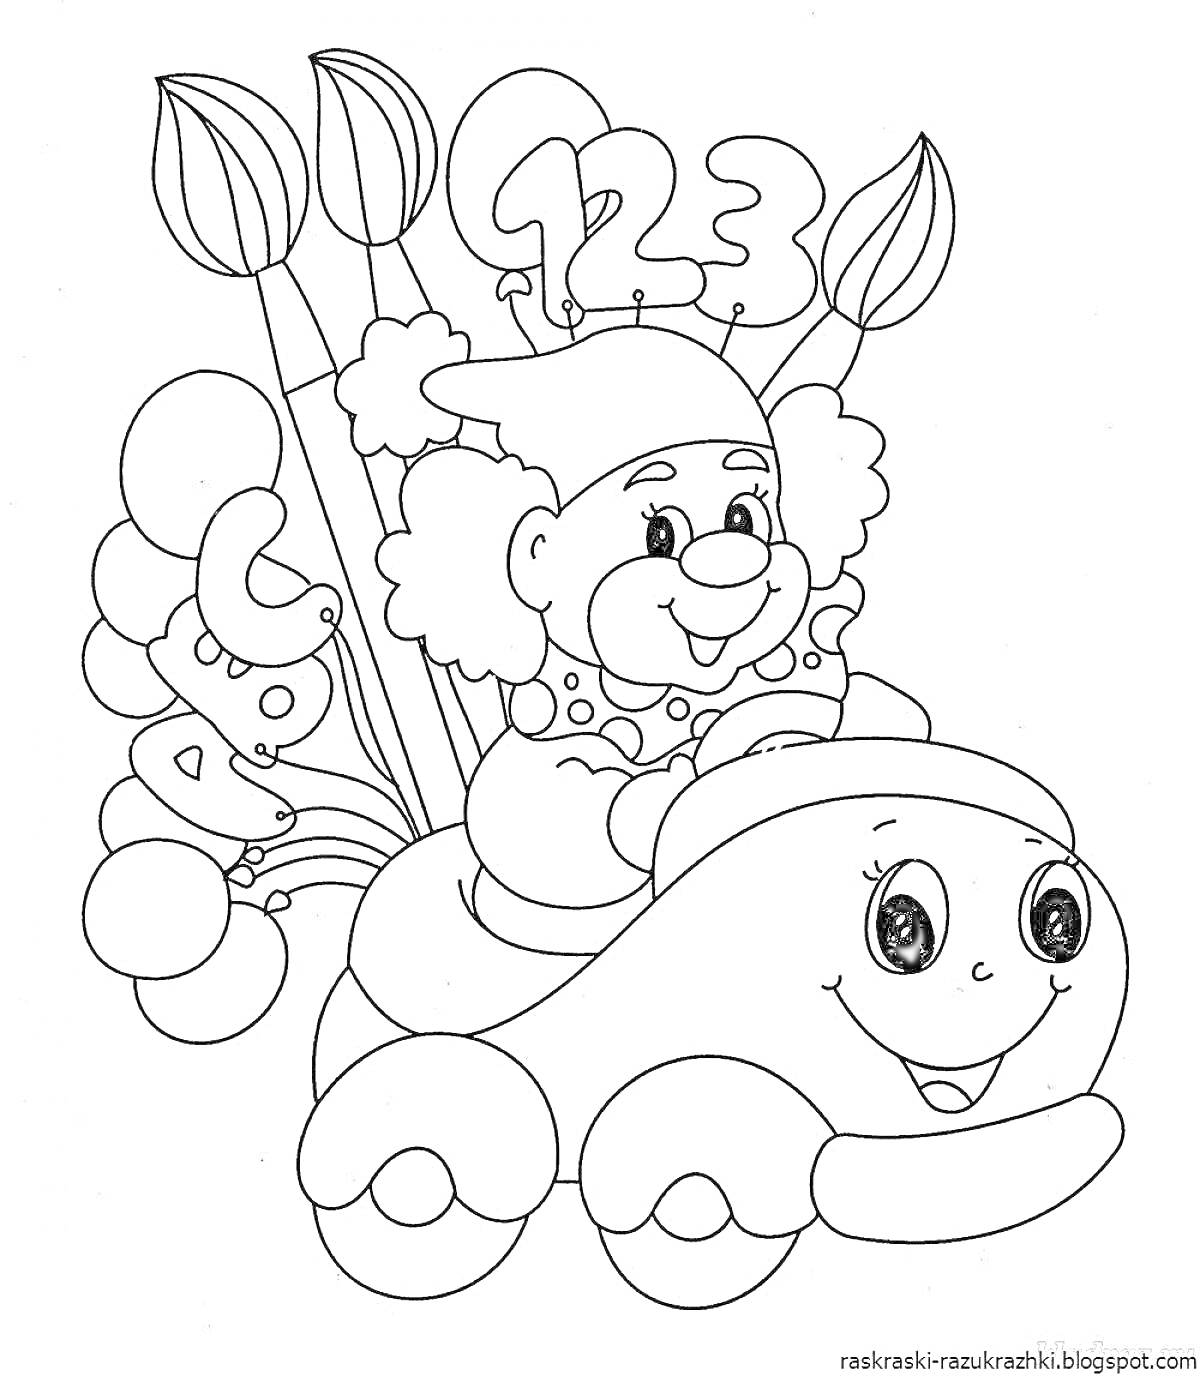 Раскраска Клоун с шарами и цифрами 1, 2, 3, сидящий на машине